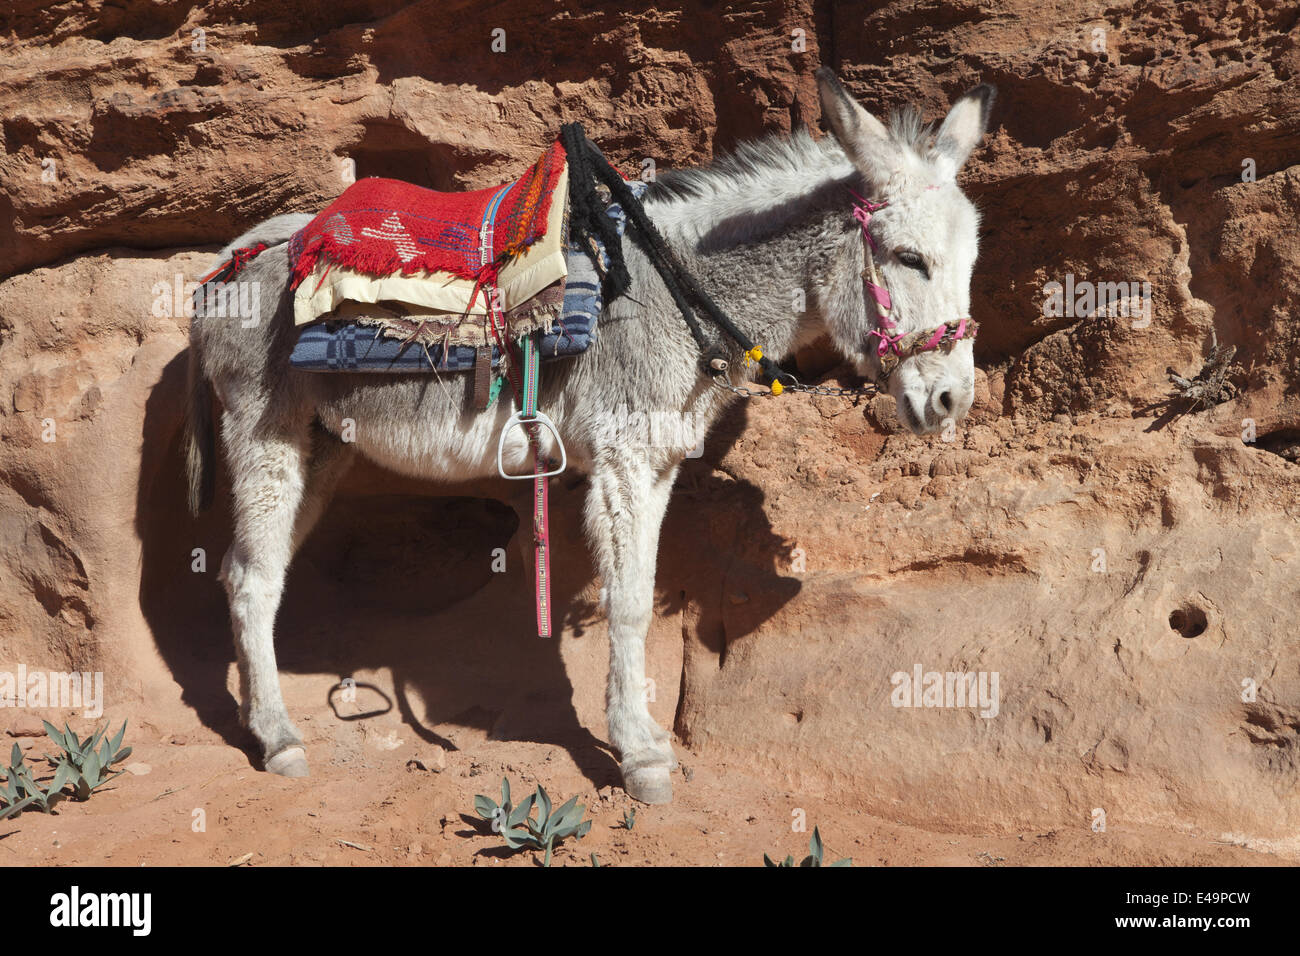 Donkey with saddle, Jordan Stock Photo